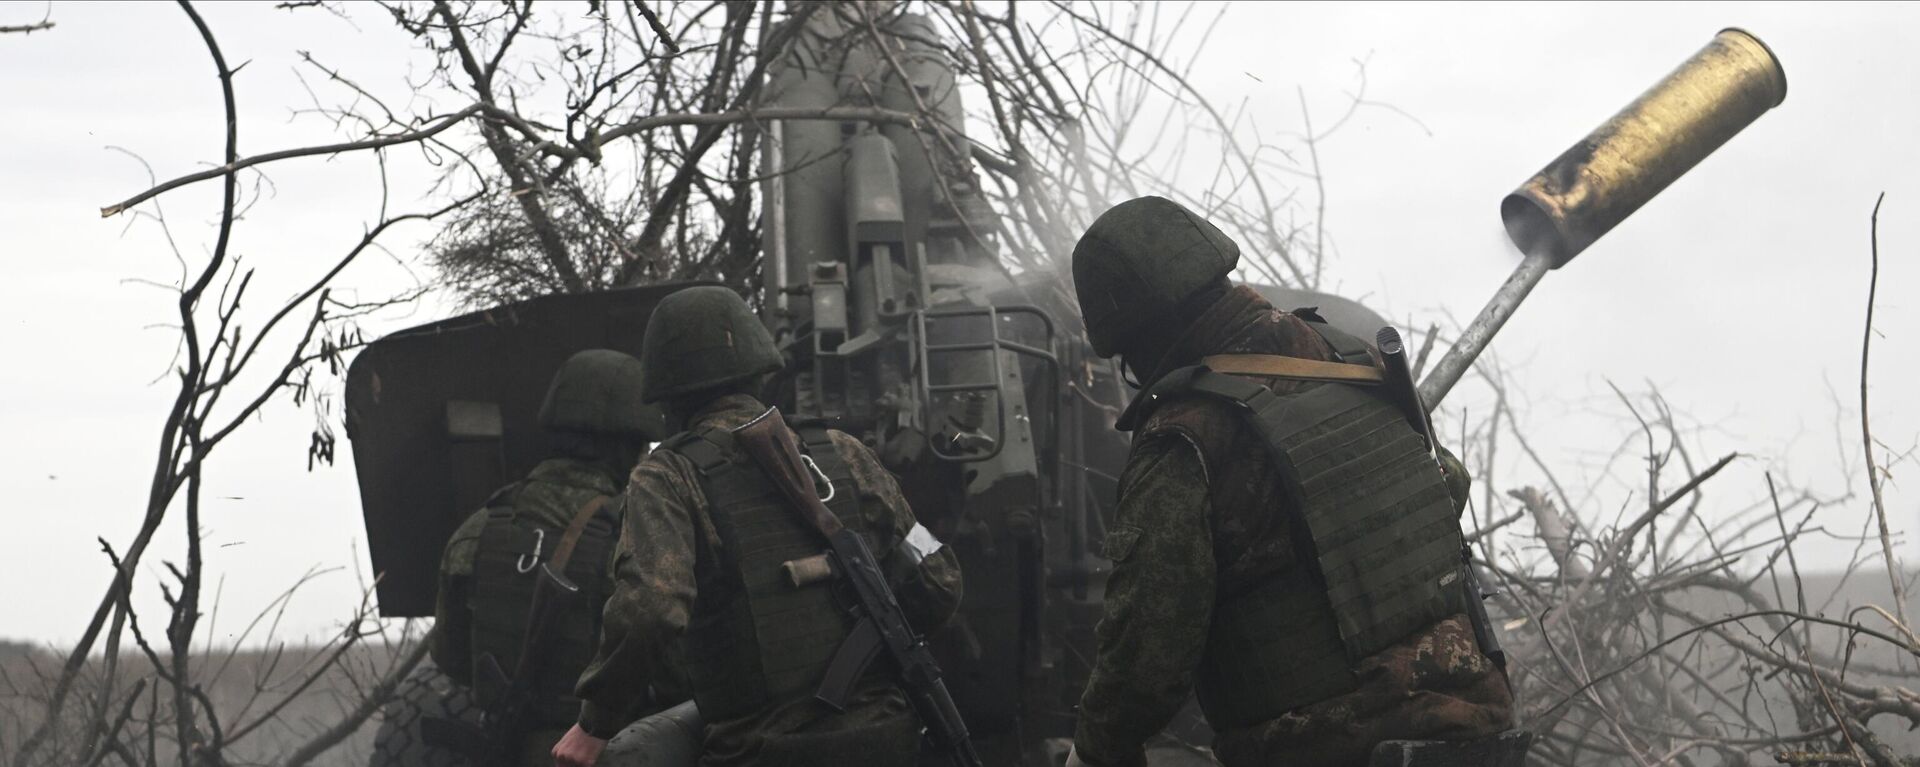 مدفعية القوات المسلحة الروسية تطلق النار على مواقع القوات المسلحة الأوكرانية من مدفع هاوتزر مستا-بي في المنطقة الجنوبية من منطقة العملية العسكرية الخاصة في أوكرانيا - سبوتنيك عربي, 1920, 01.04.2023